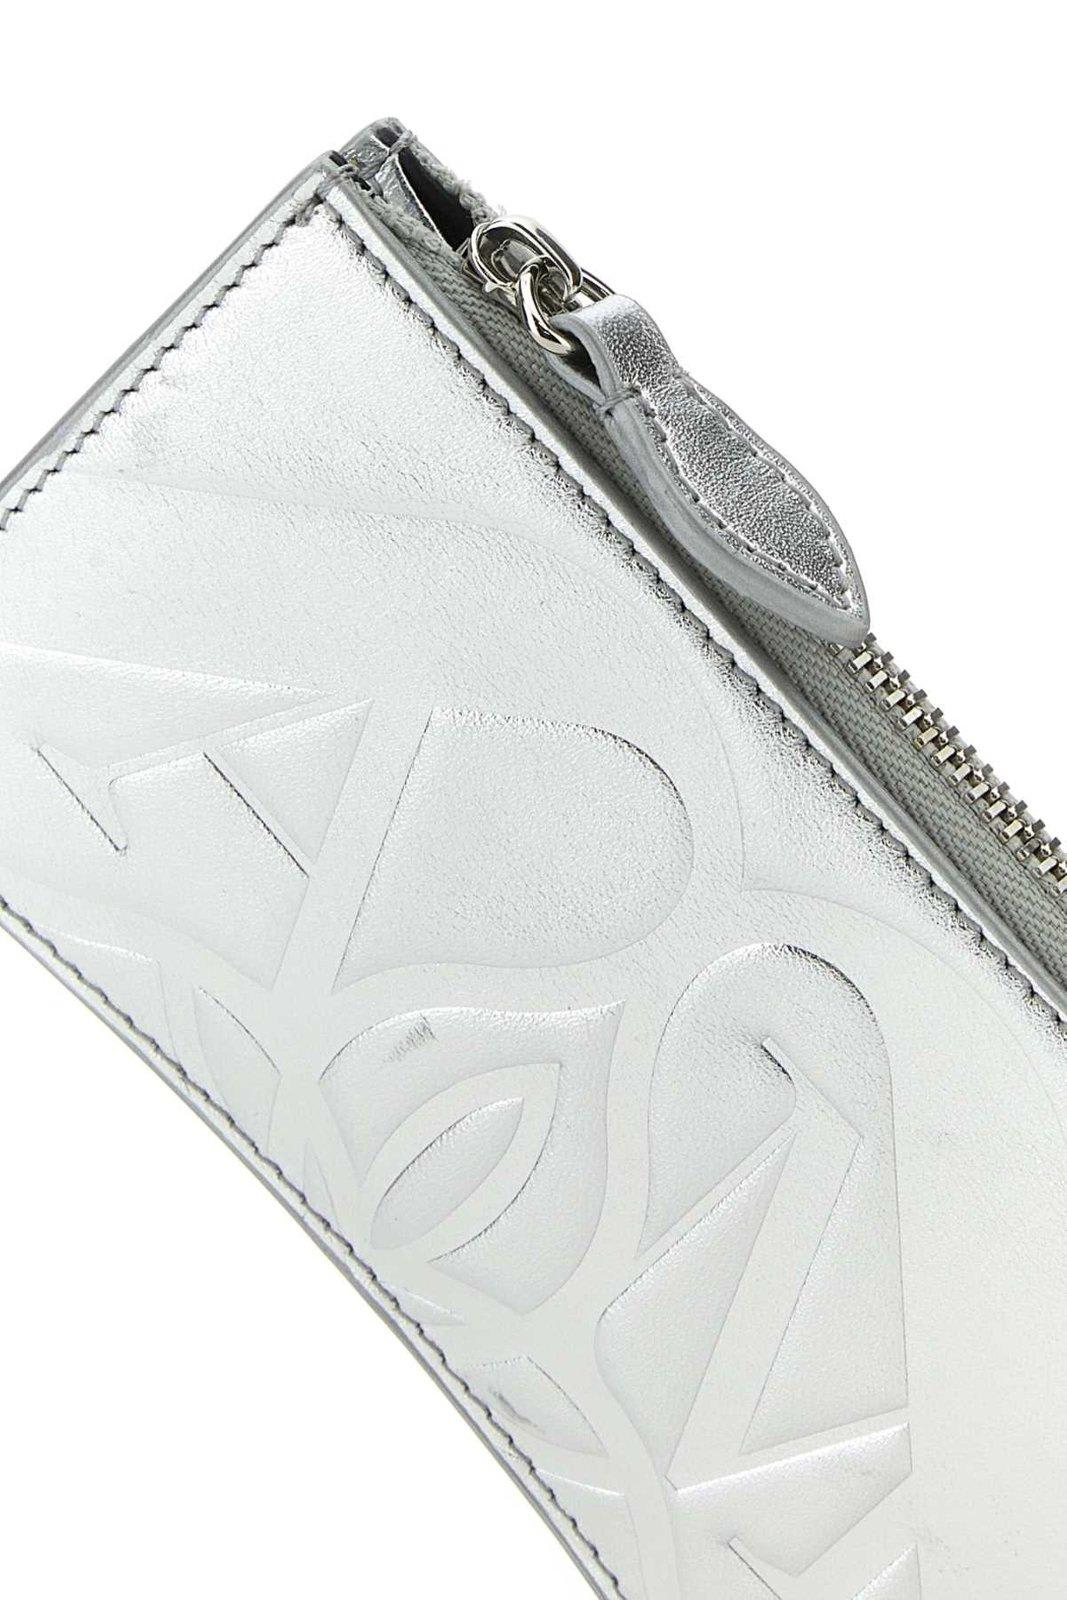 Shop Alexander Mcqueen Logo Embossed Zipped Wallet In Argento